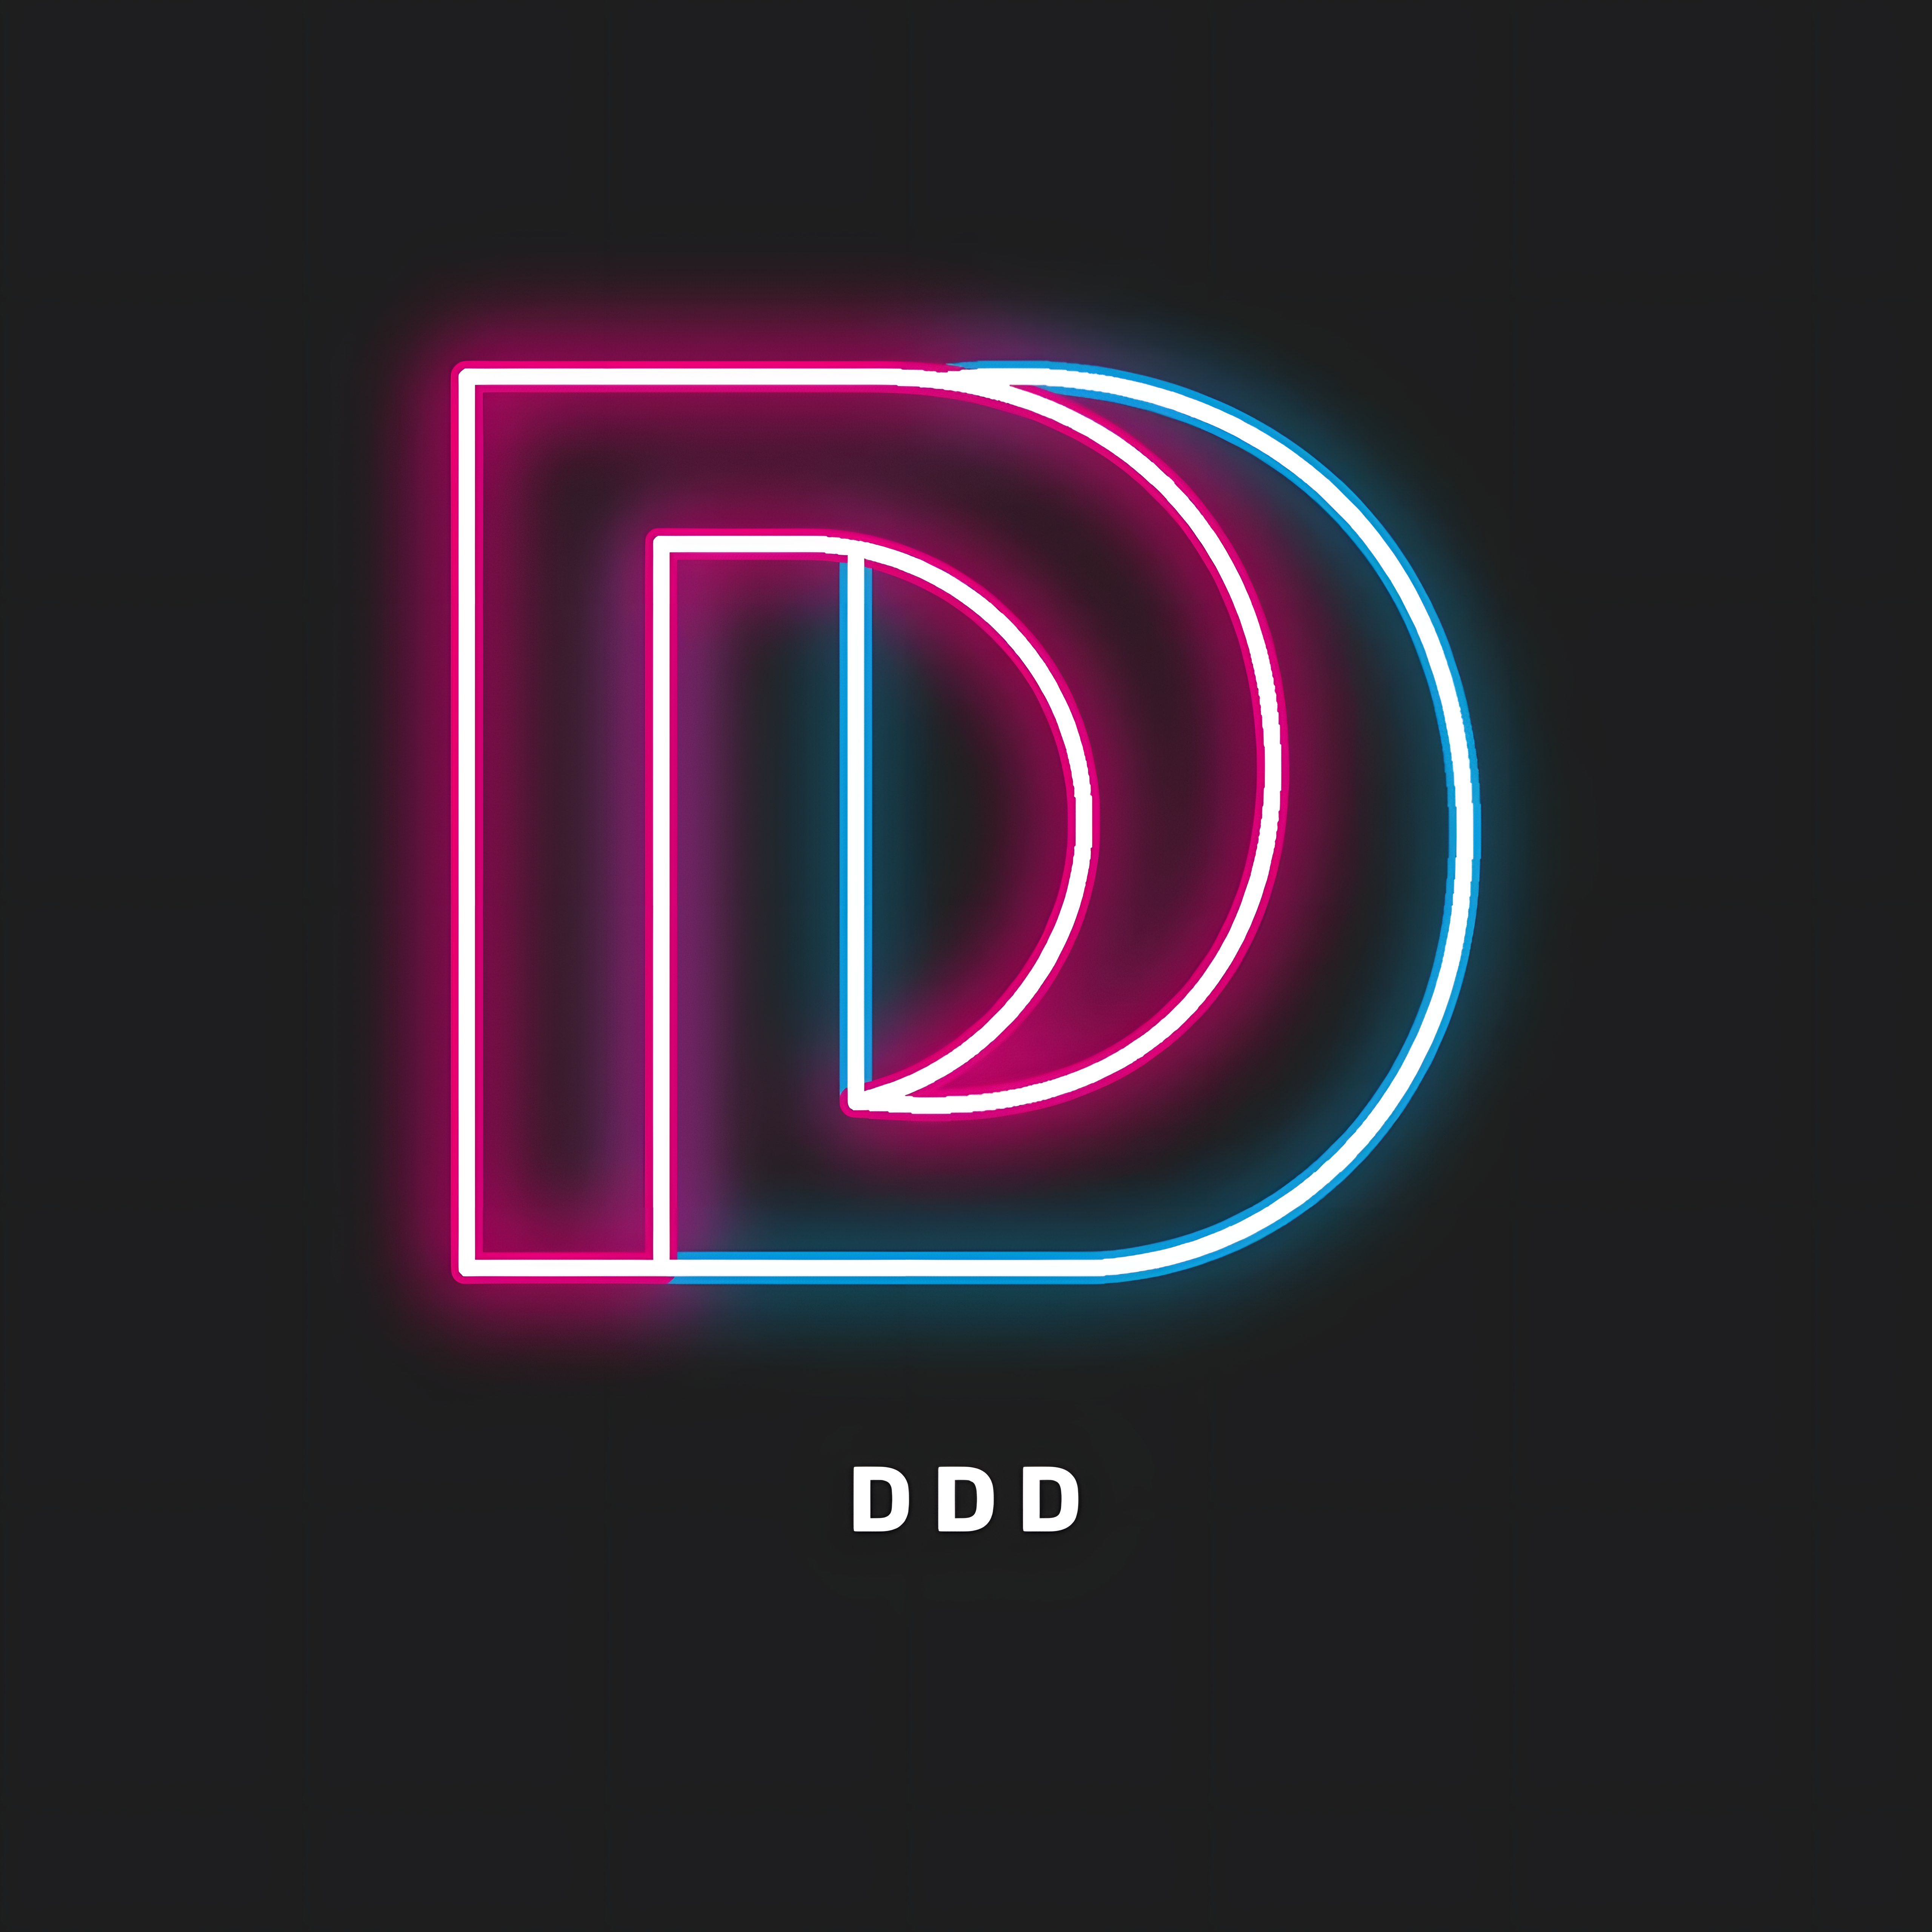 DDD.is